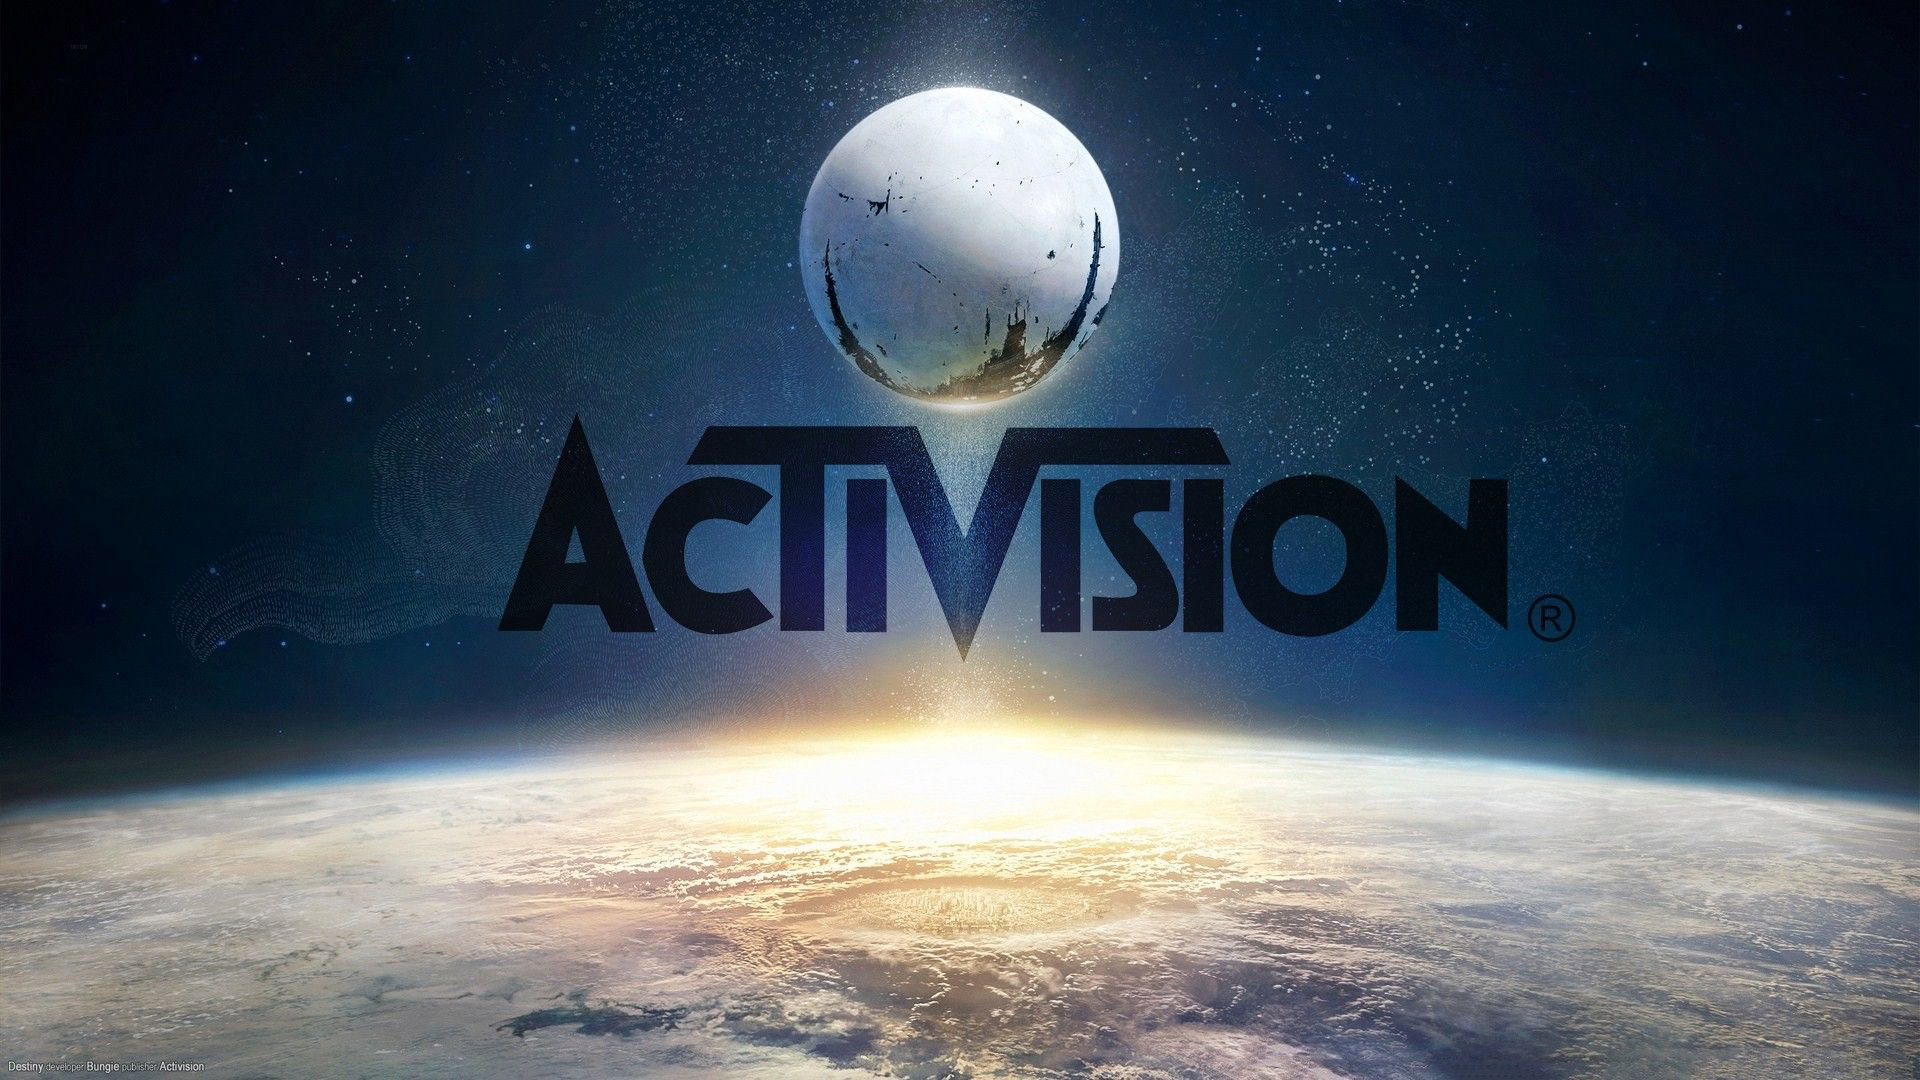 بهترین و بدترین بازی های شرکت Activision با توجه به امتیاز متاکریتیک